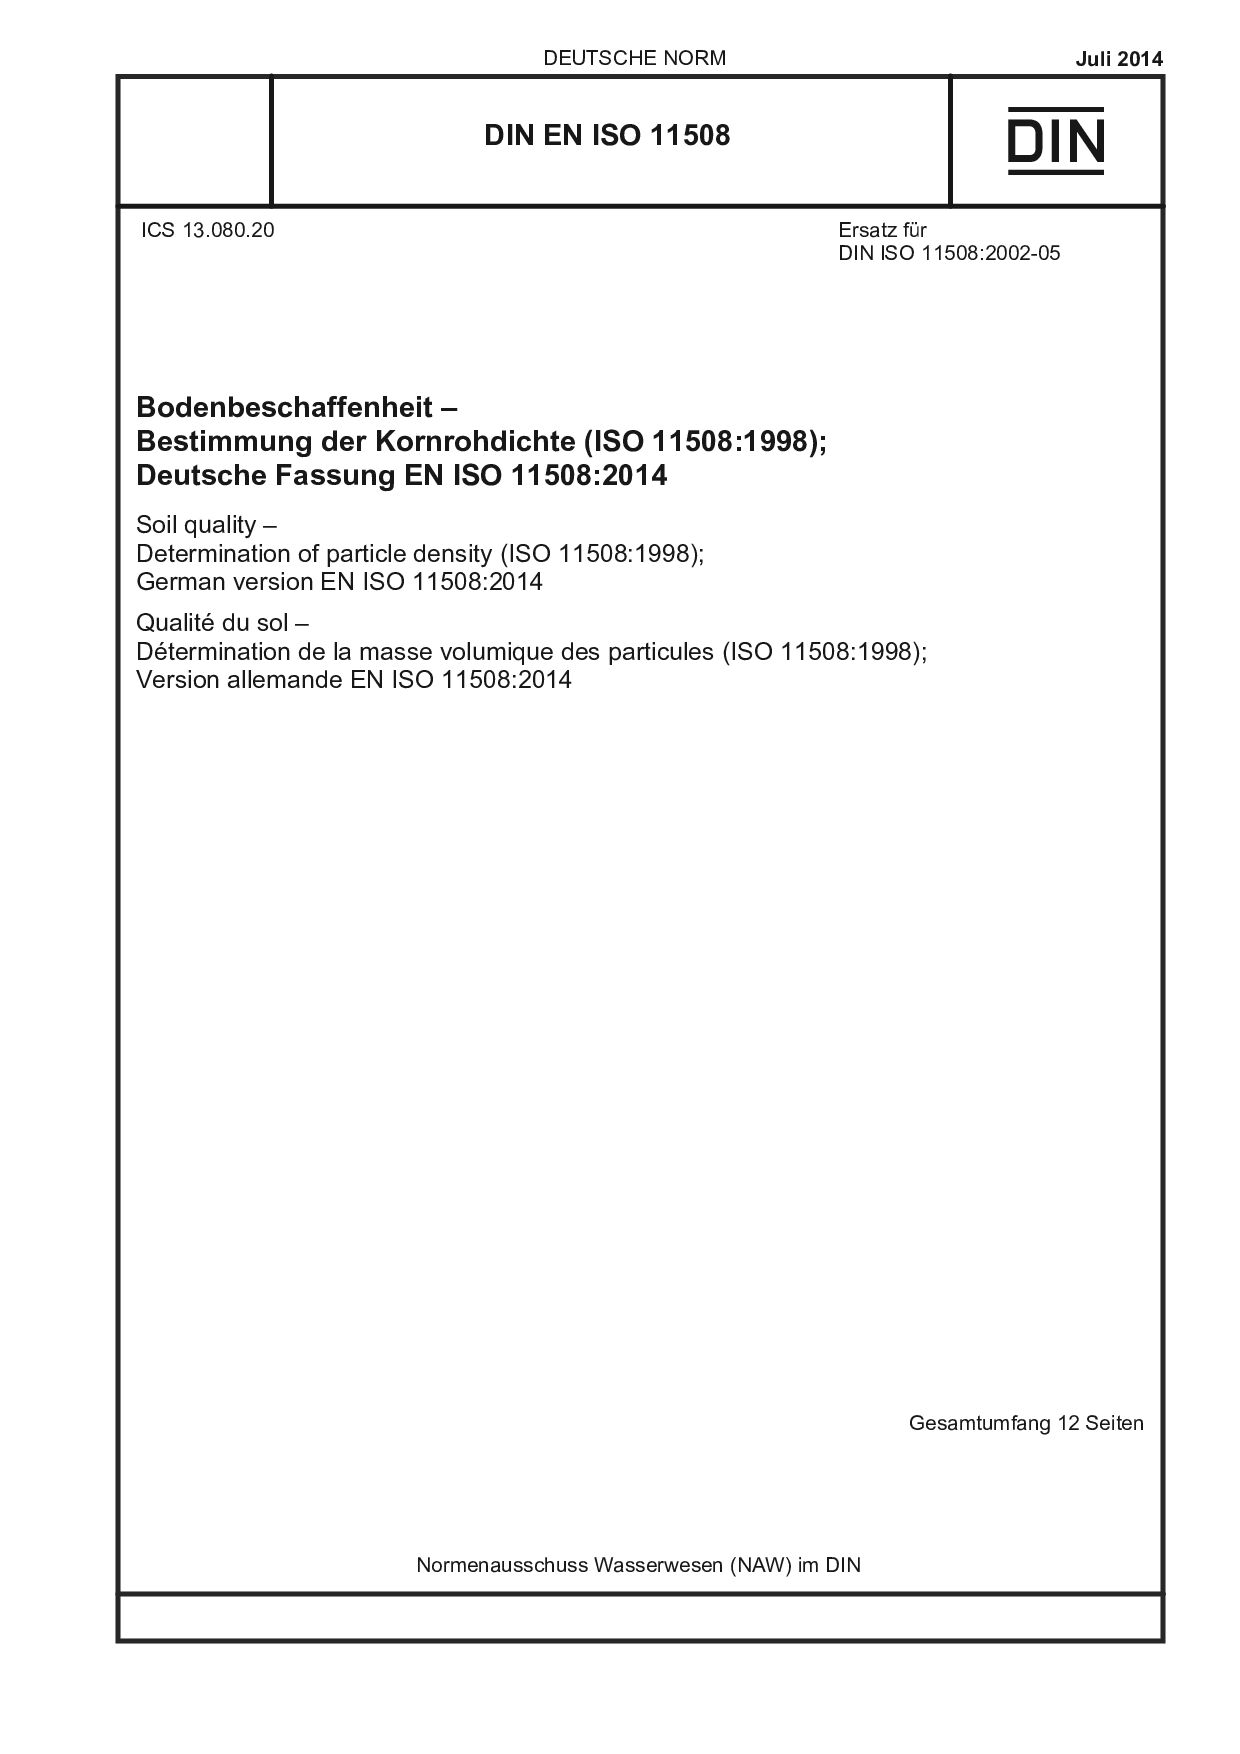 DIN EN ISO 11508:2014